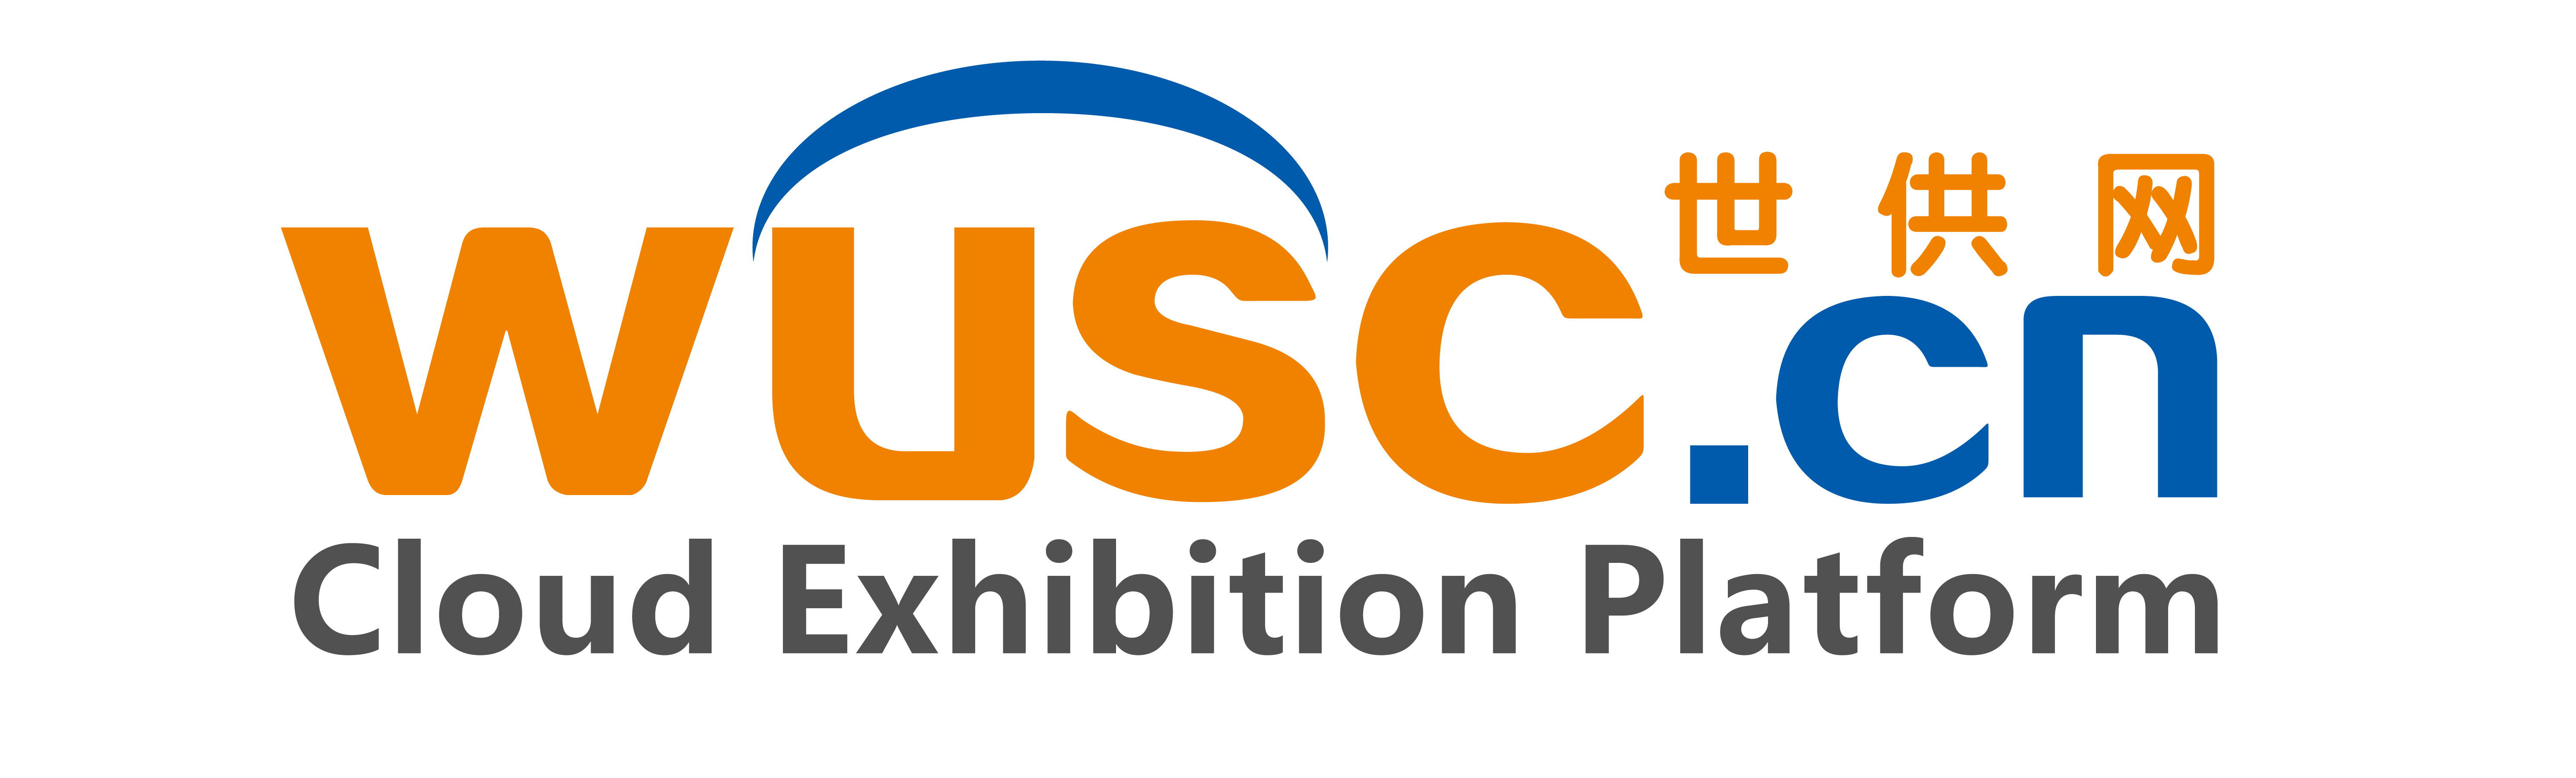 Wusc Cloud Exhibition platform